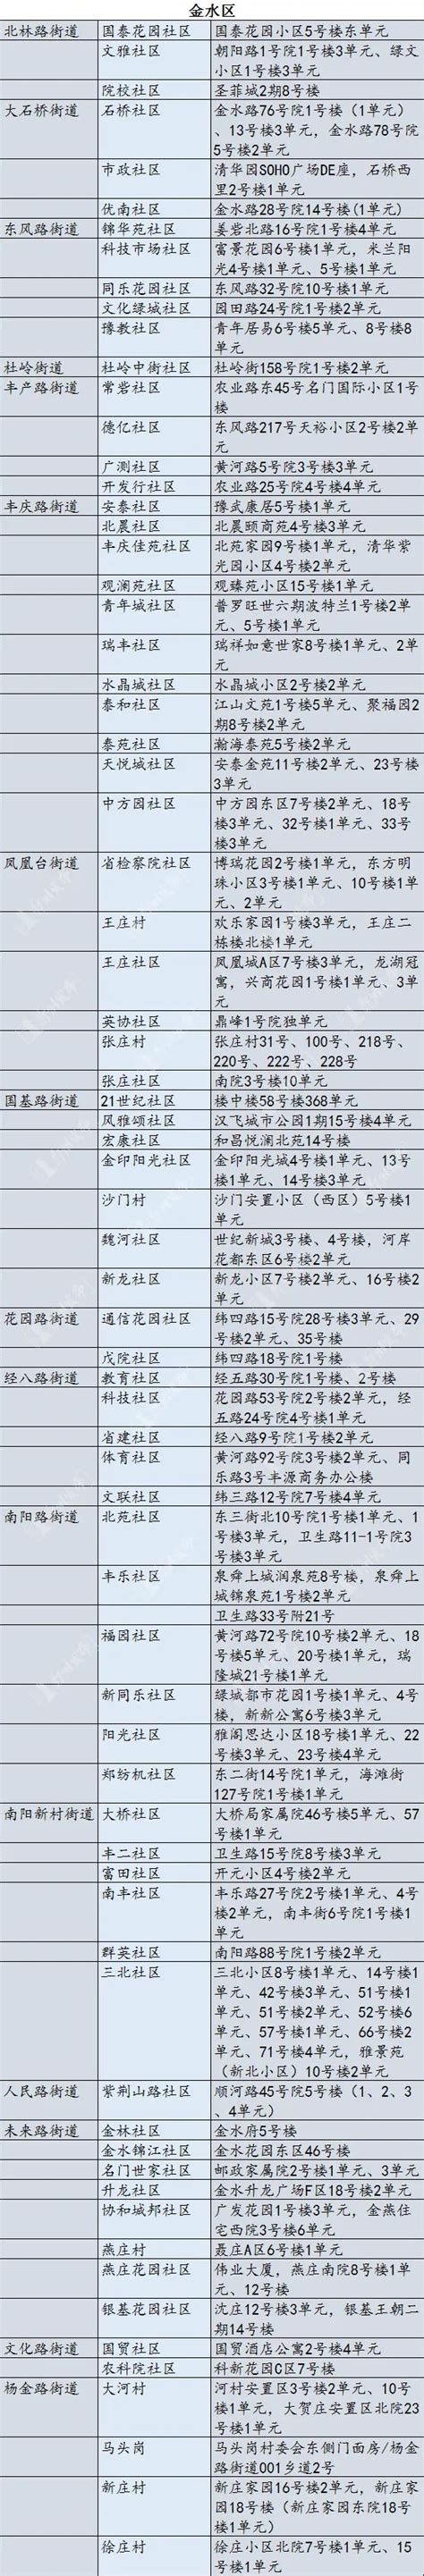 郑州市公布现有高风险区名单！其他区域恢复正常生产生活秩序-中华网河南